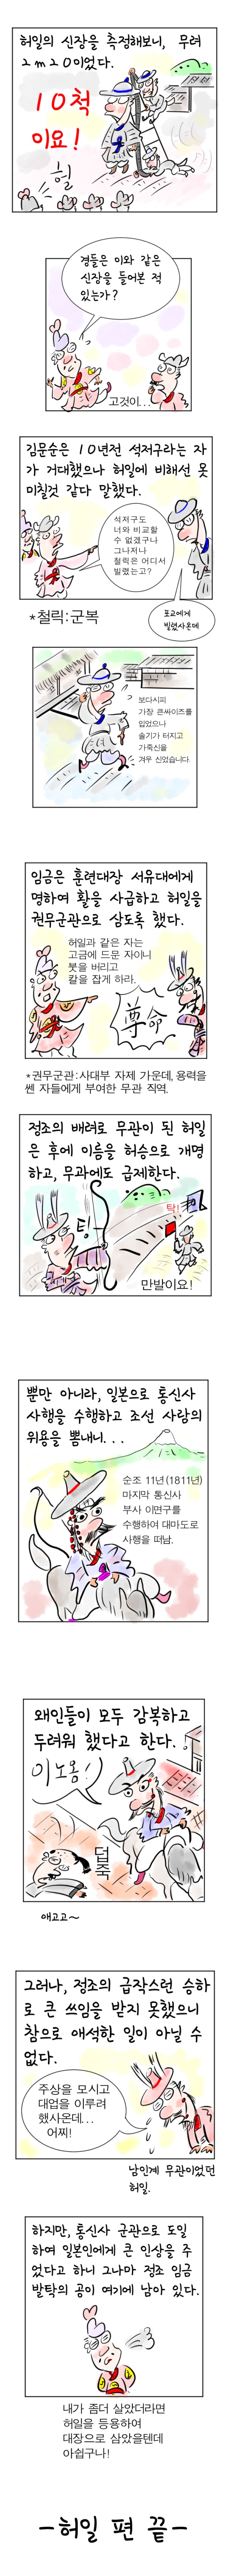 [역사툰] 史(사)람 이야기 25화: 조선의 최홍만, 2미터 거인 허일

